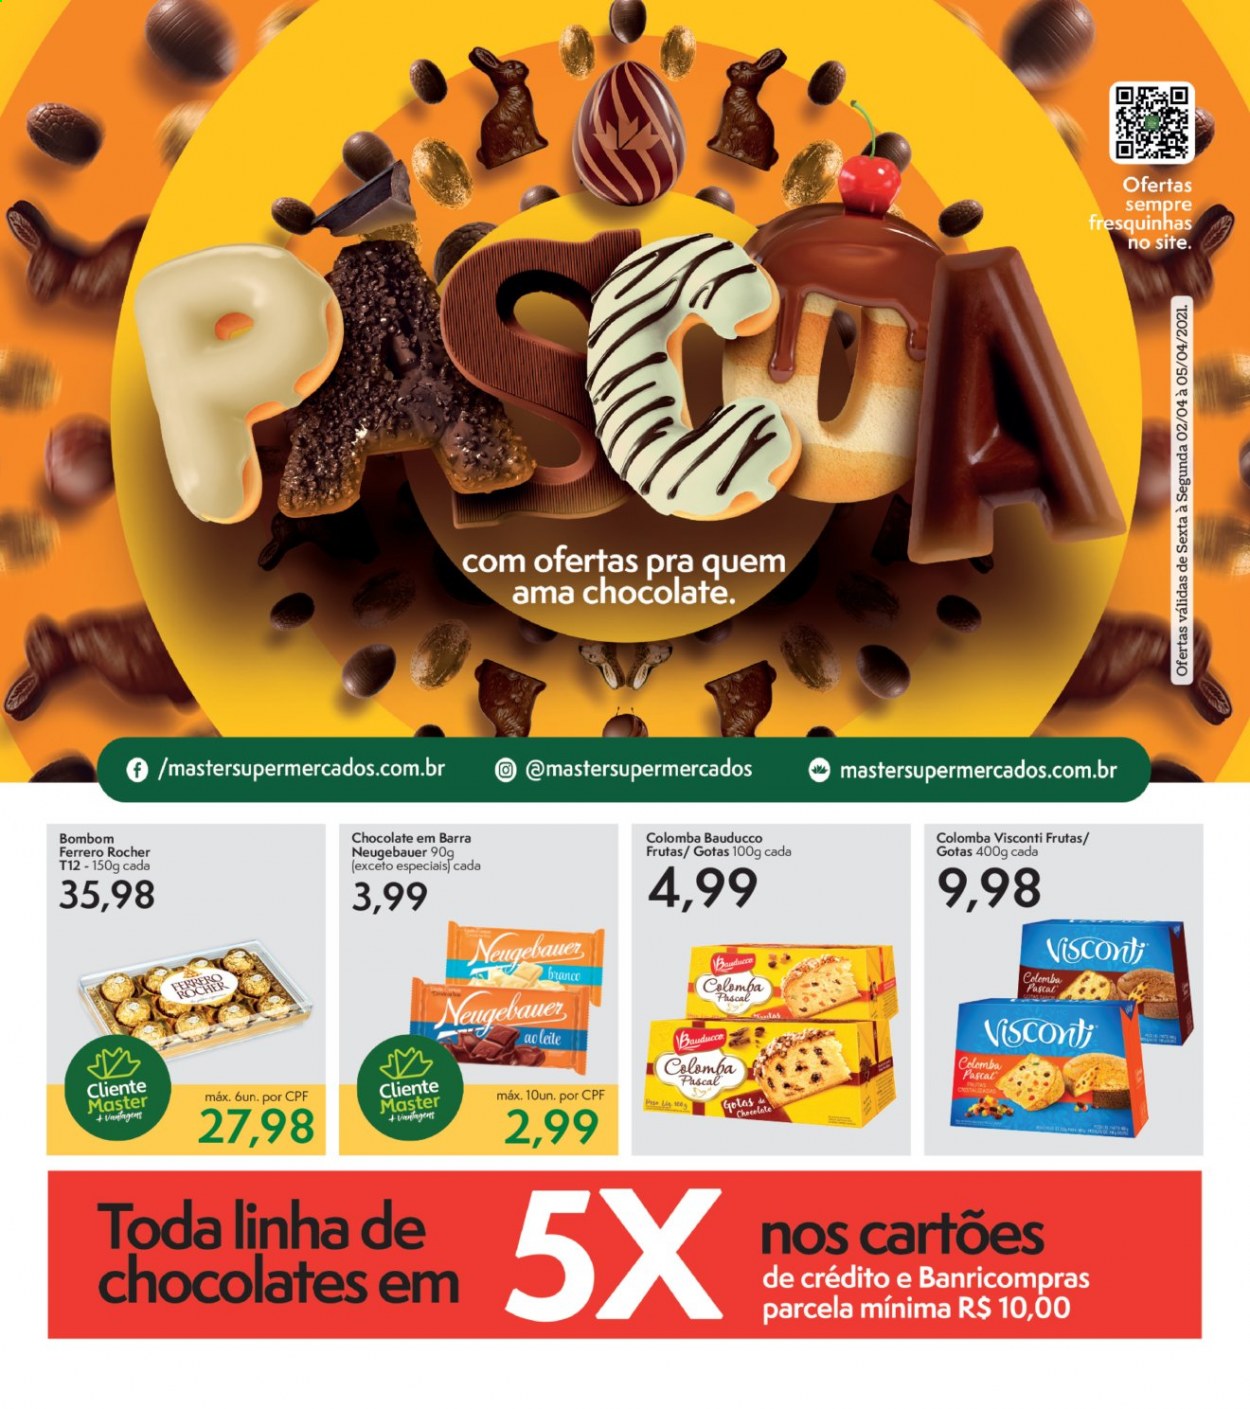 thumbnail - Folheto Master Supermercados - 03/04/2021 - 05/04/2021 - Produtos em promoção - chocolate, Ferrero Rocher, bombom, Neugebauer. Página 1.